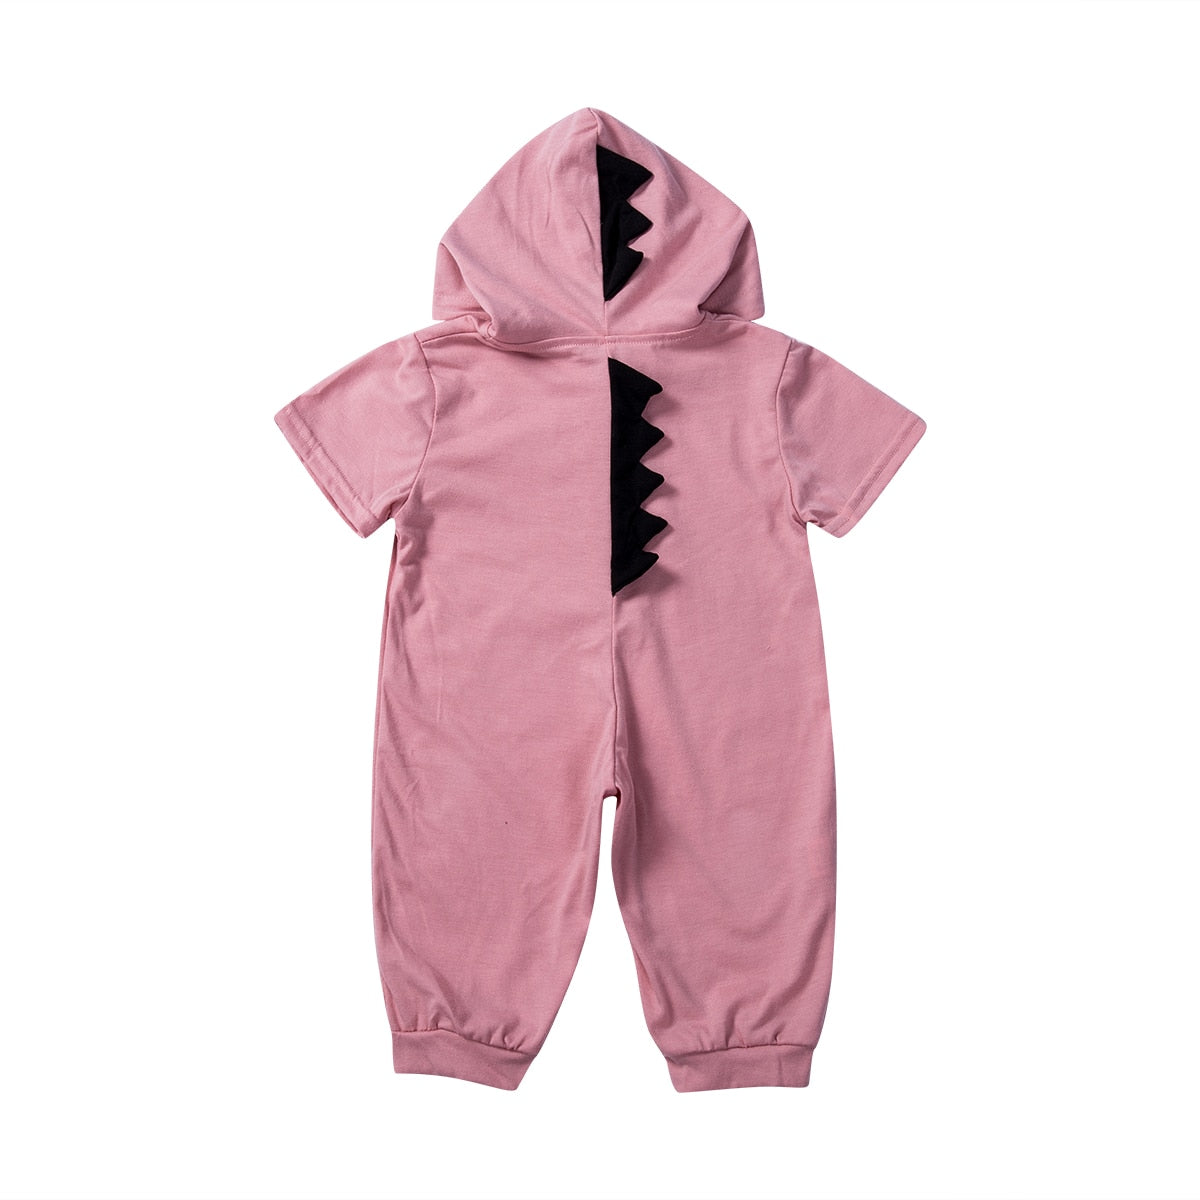 Citgeett Summer 6 Colors Dinosaur Romper Newborn Infant Baby Boys Girls Jumpsuit Cute Zipper Summer Clothes Hooded Outfits